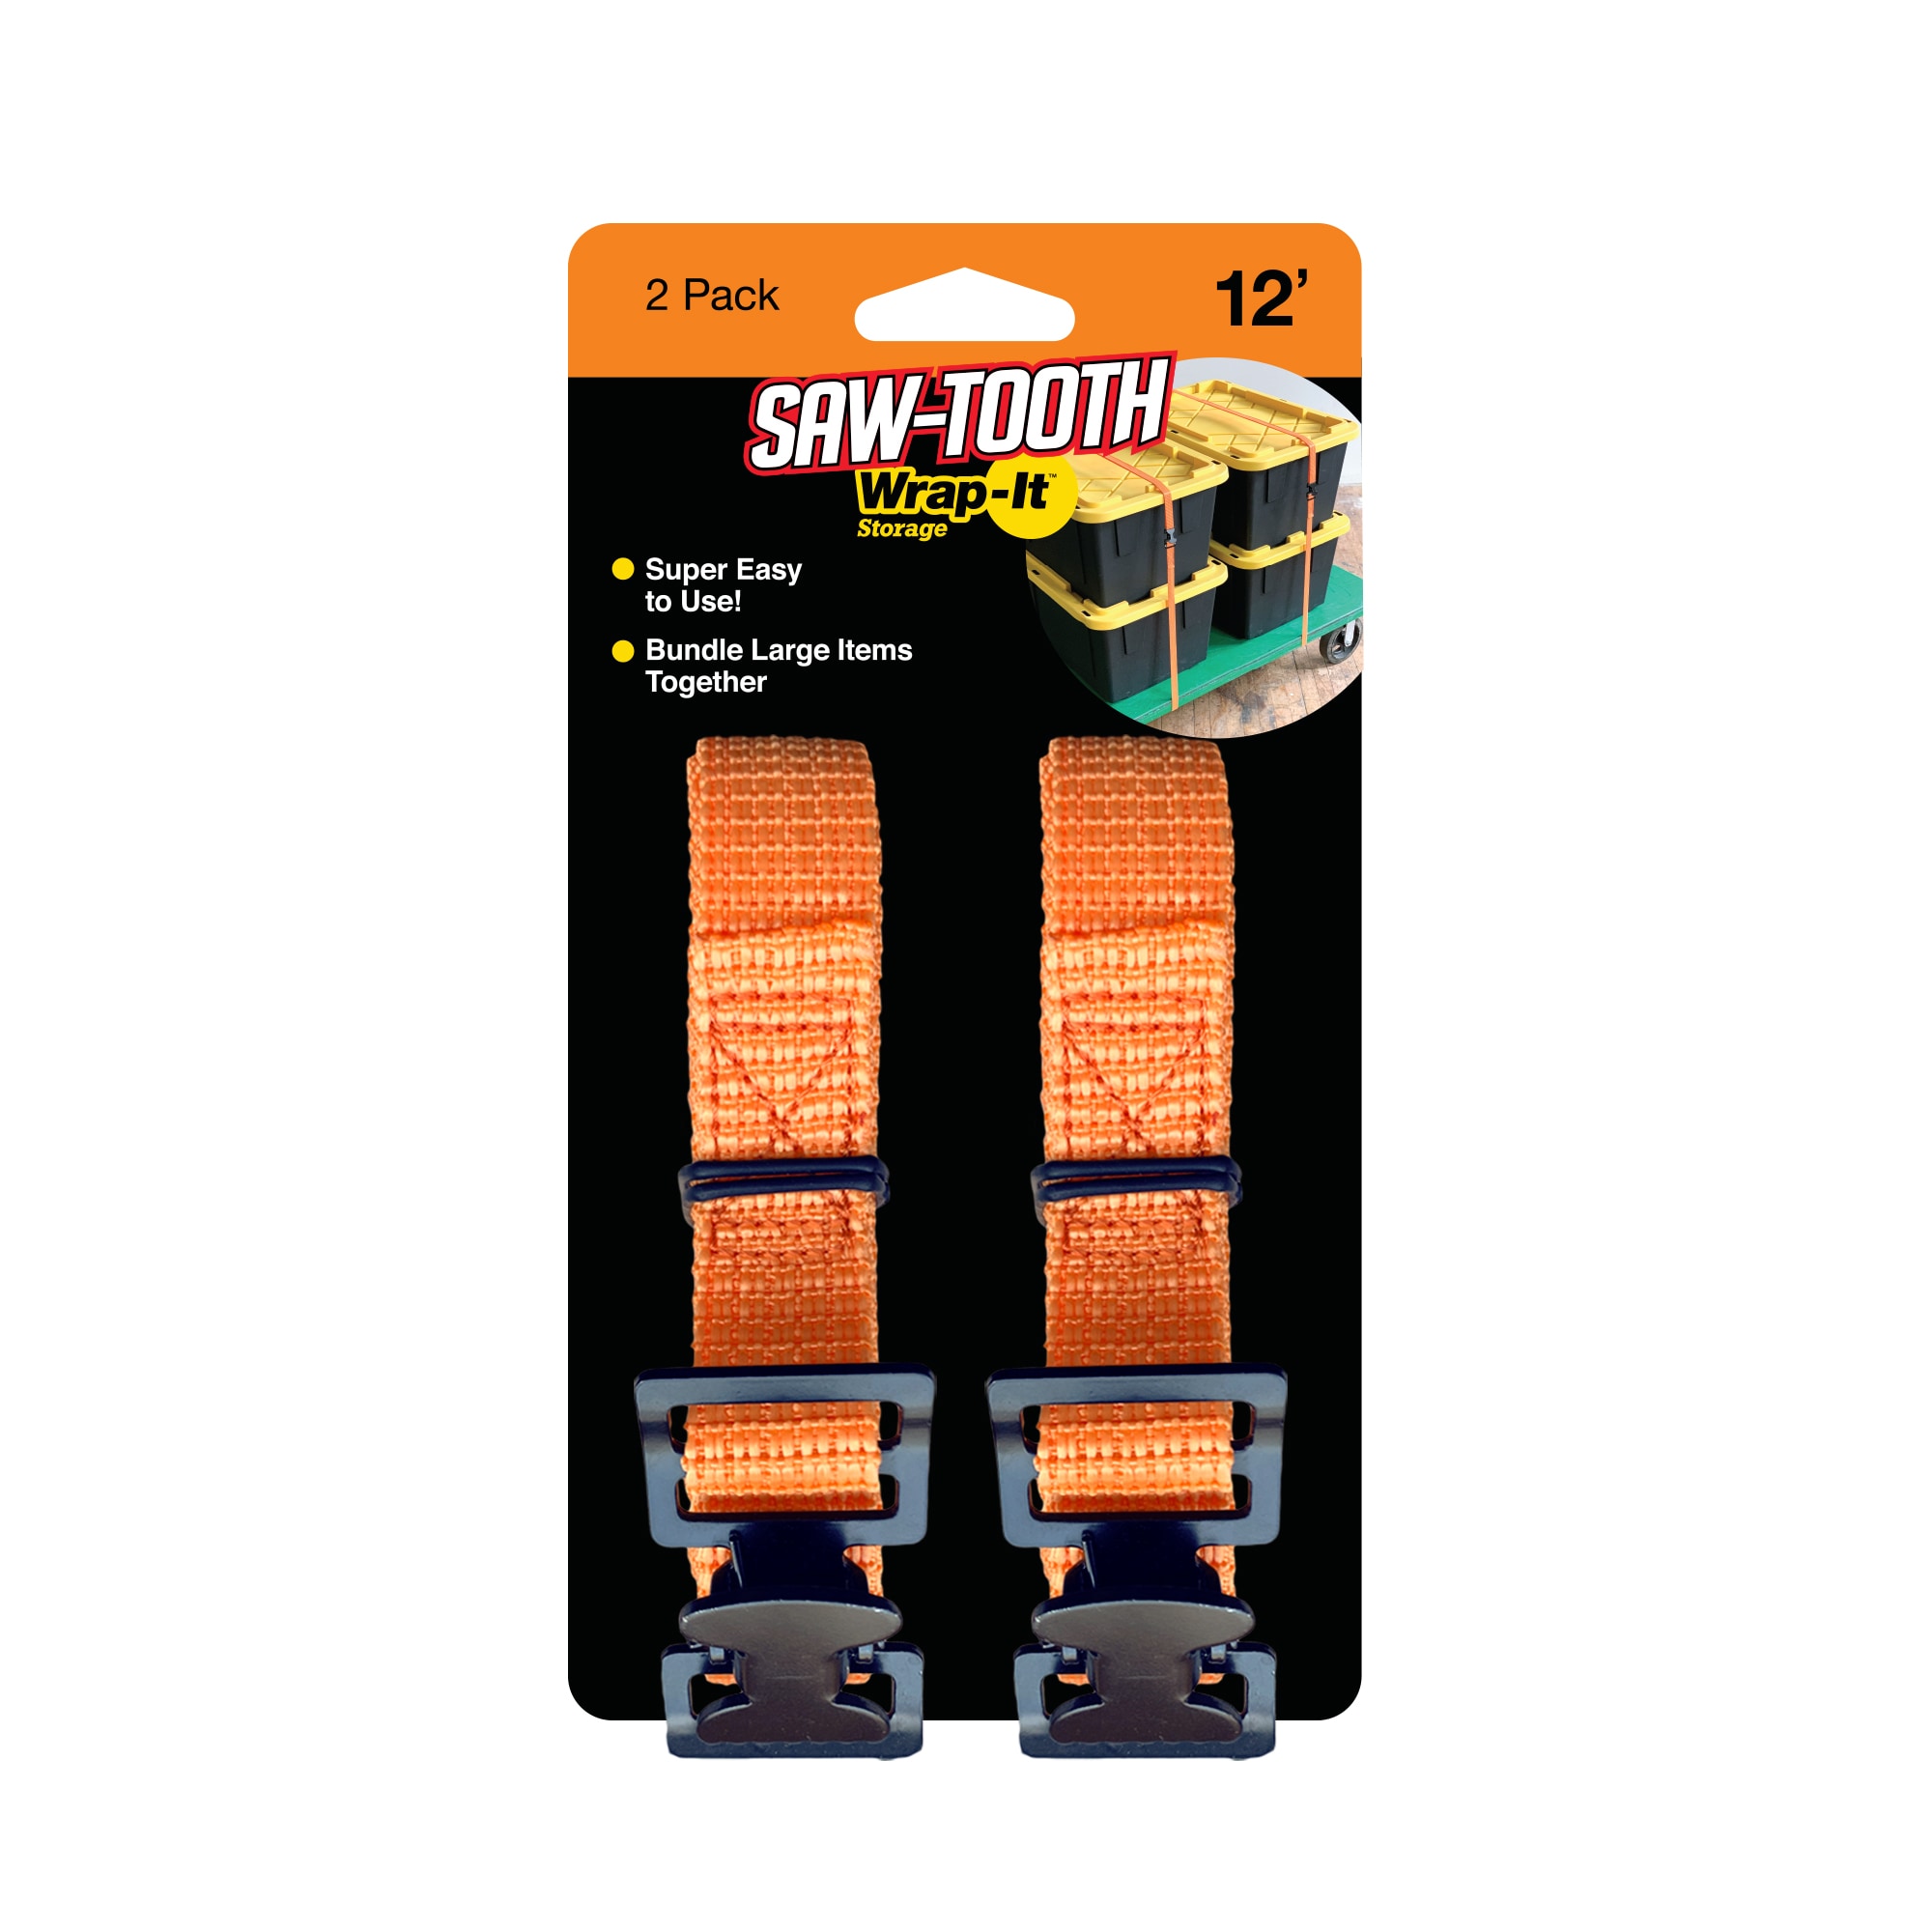 Strap Buckle Packing Straps Adjustable 1-Inch Belt (1 Wide - 40 Long,  Orange(4-Pack)) 